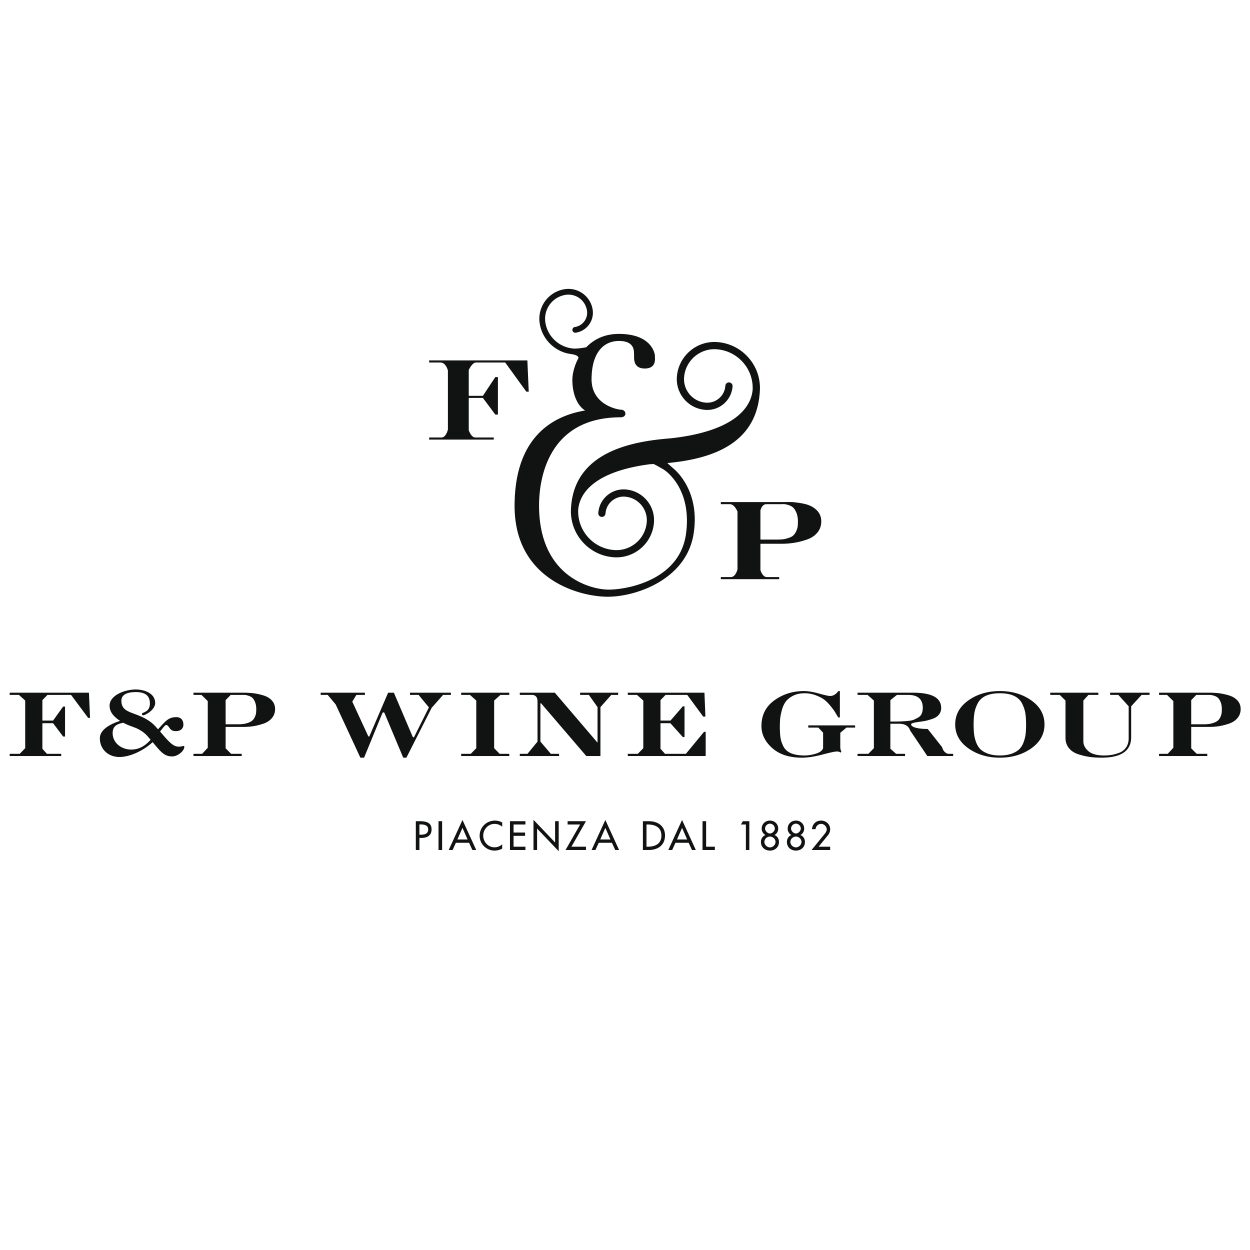 F&P Wine Group presente a Roma alla manifestazione ‘I Migliori Vini Italiani’ di Luca Maroni